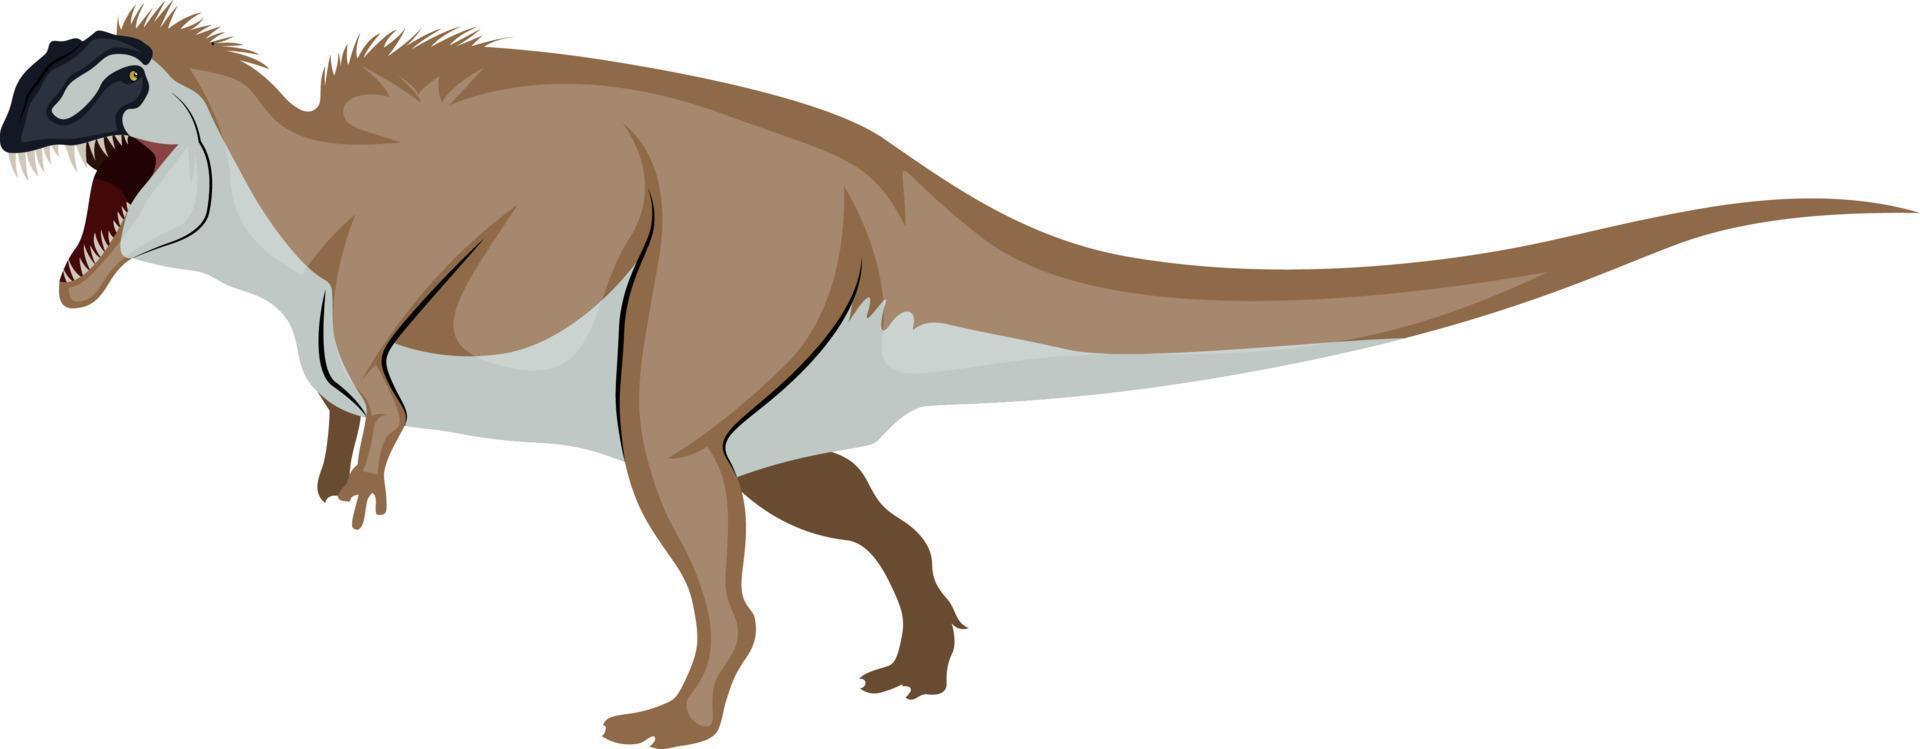 ocantosaurus, illustration, vektor på vit bakgrund.